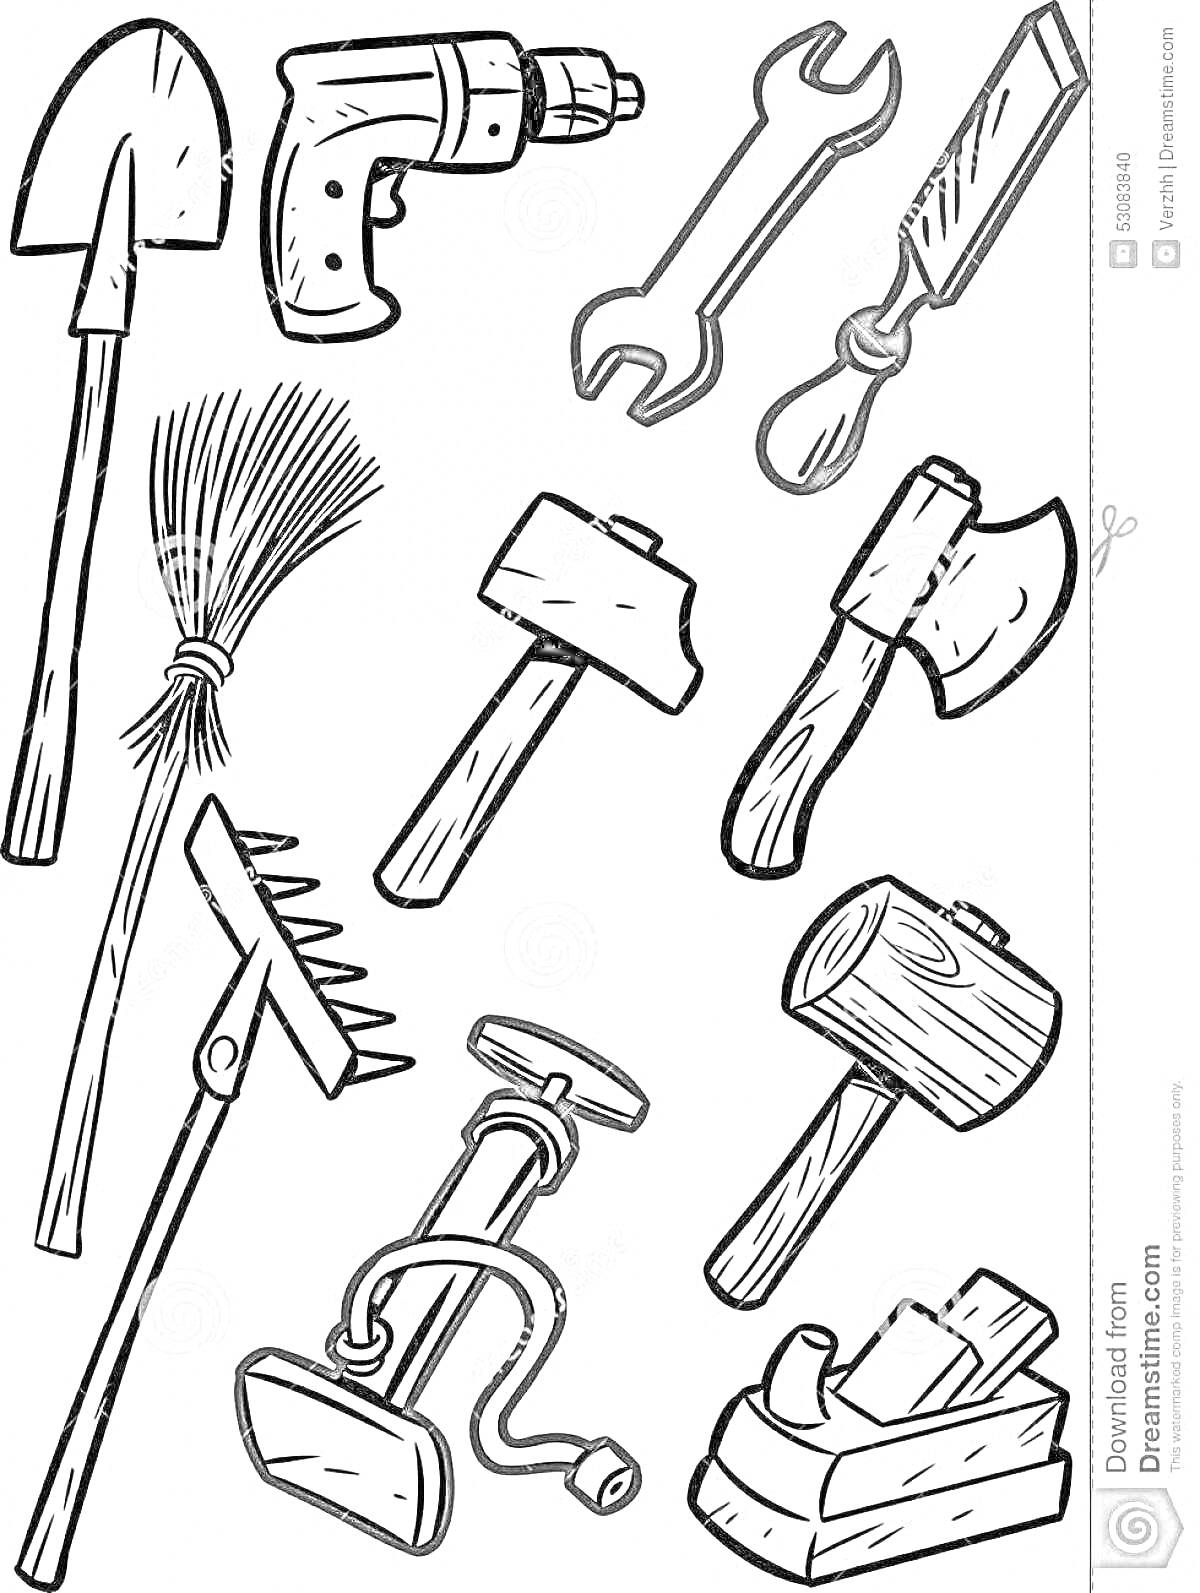 Раскраска Набор инструментов: лопата, дрель, гаечный ключ, стамеска, веник, молоток, топор, грабли, насос, деревянный молоток, рубанок